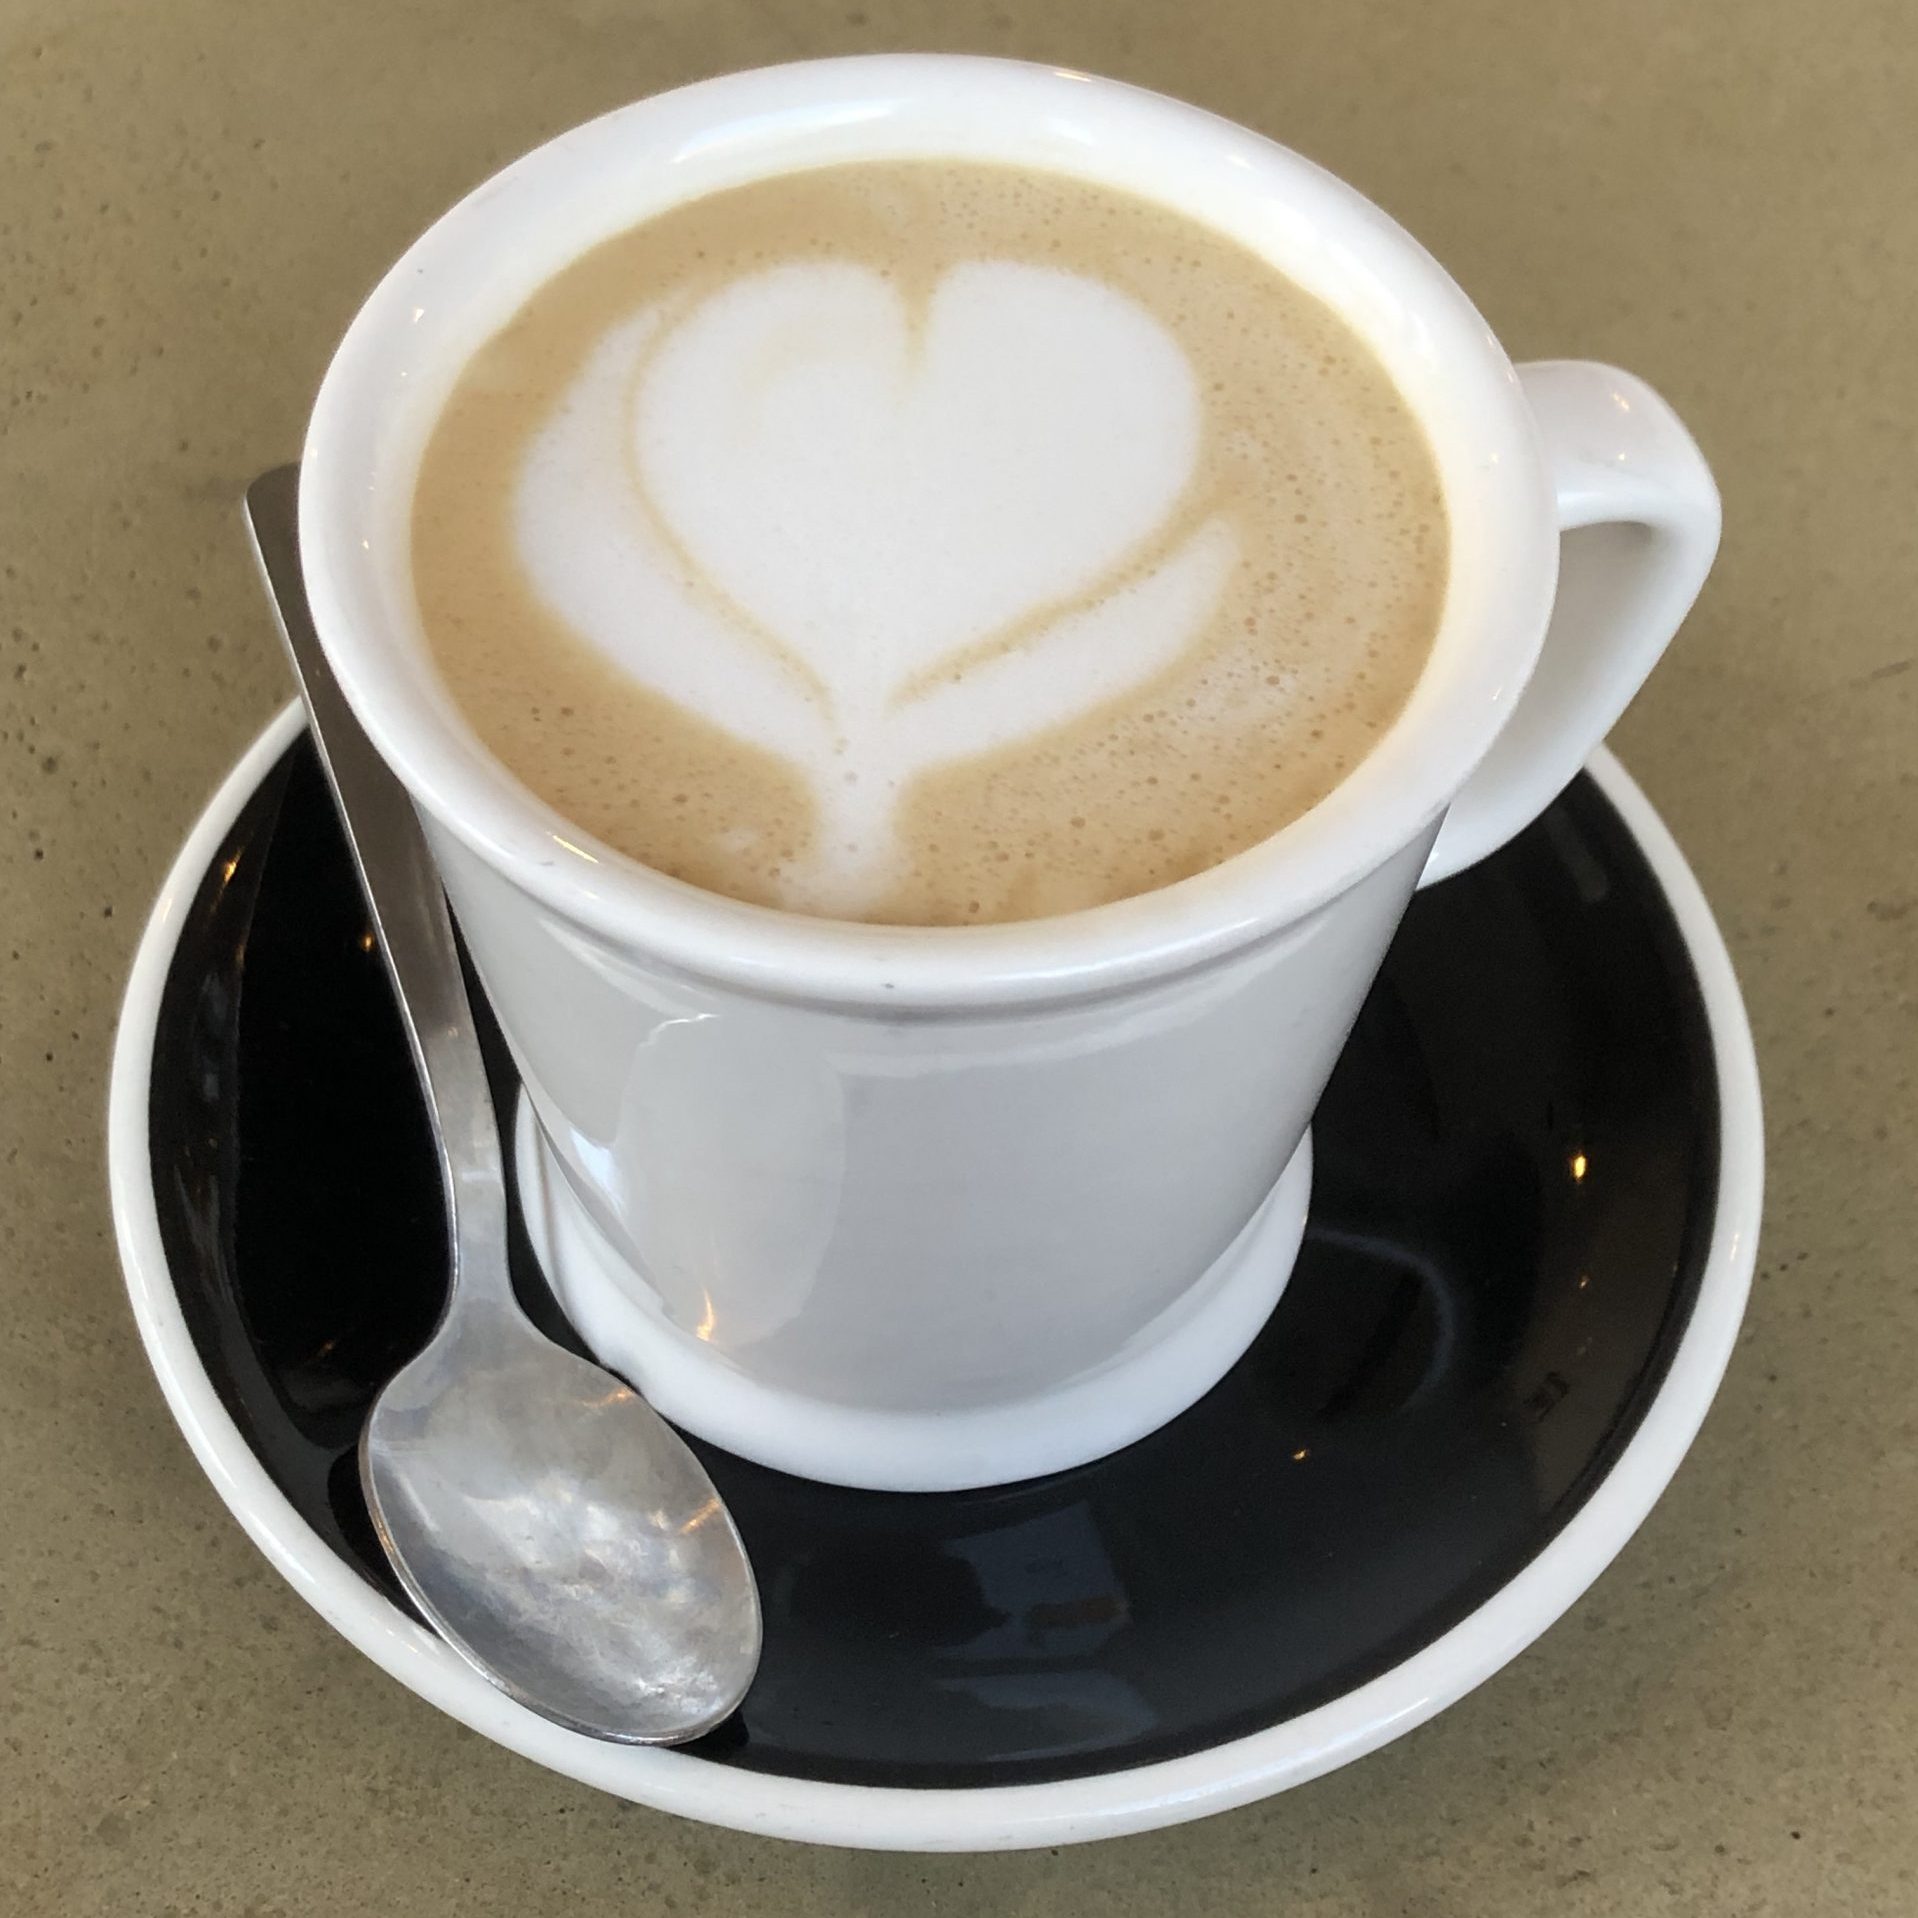 Latte with stylized foam heart